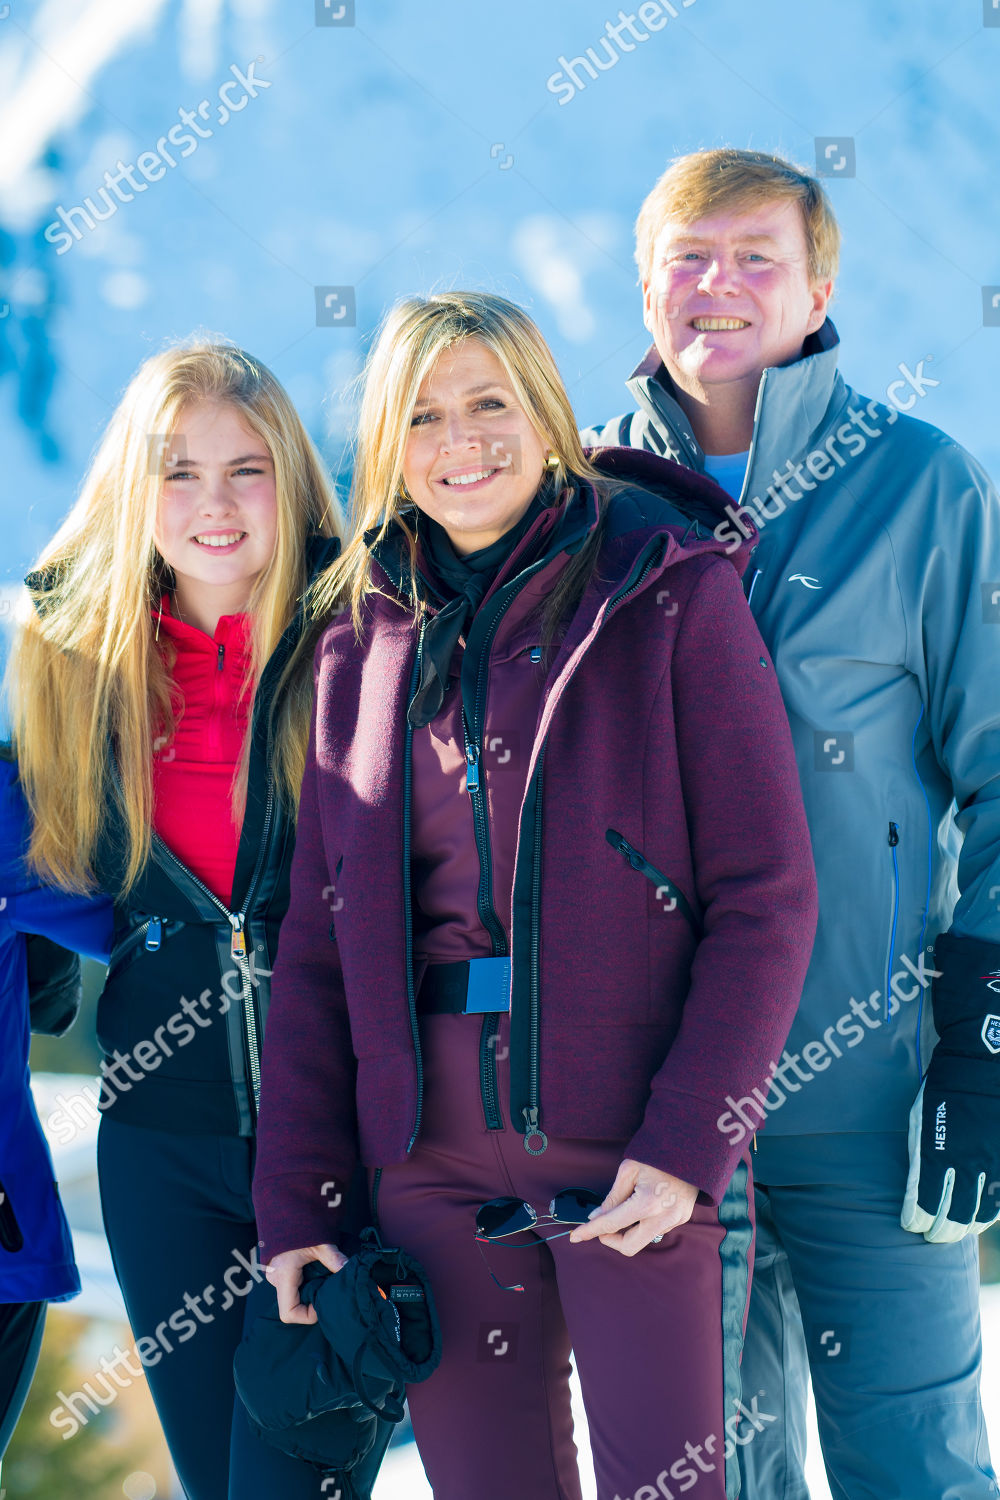 dutch-royals-winter-holiday-photocall-lech-austria-shutterstock-editorial-10118946t.jpg